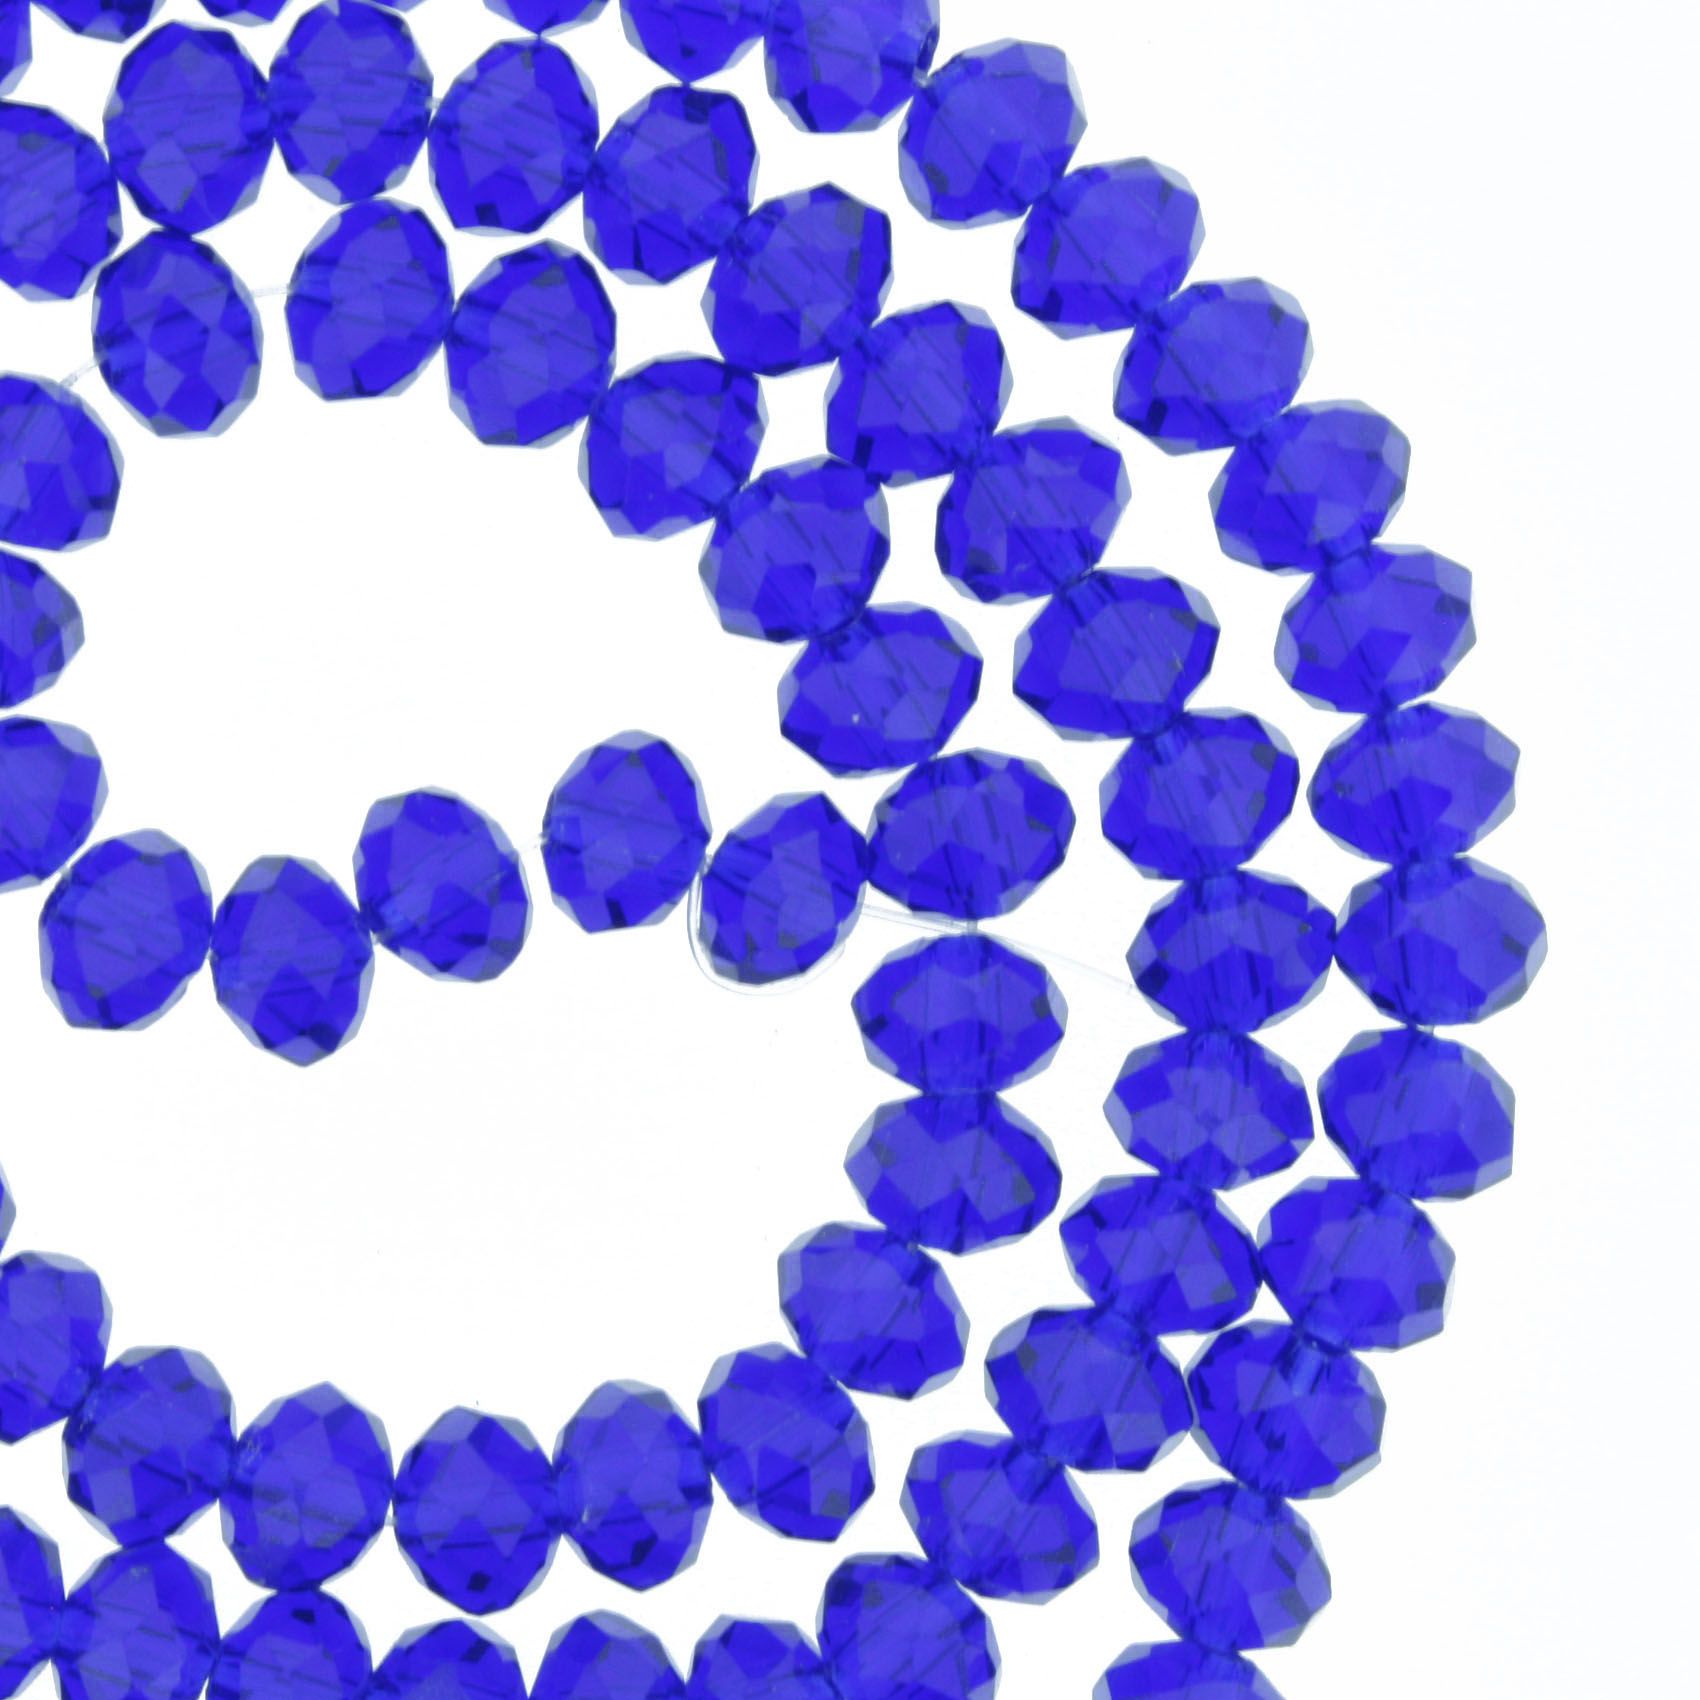 Fio de Cristal - Flat® - Azul Royal Transparente - 6mm - Stéphanie Bijoux® - Peças para Bijuterias e Artesanato